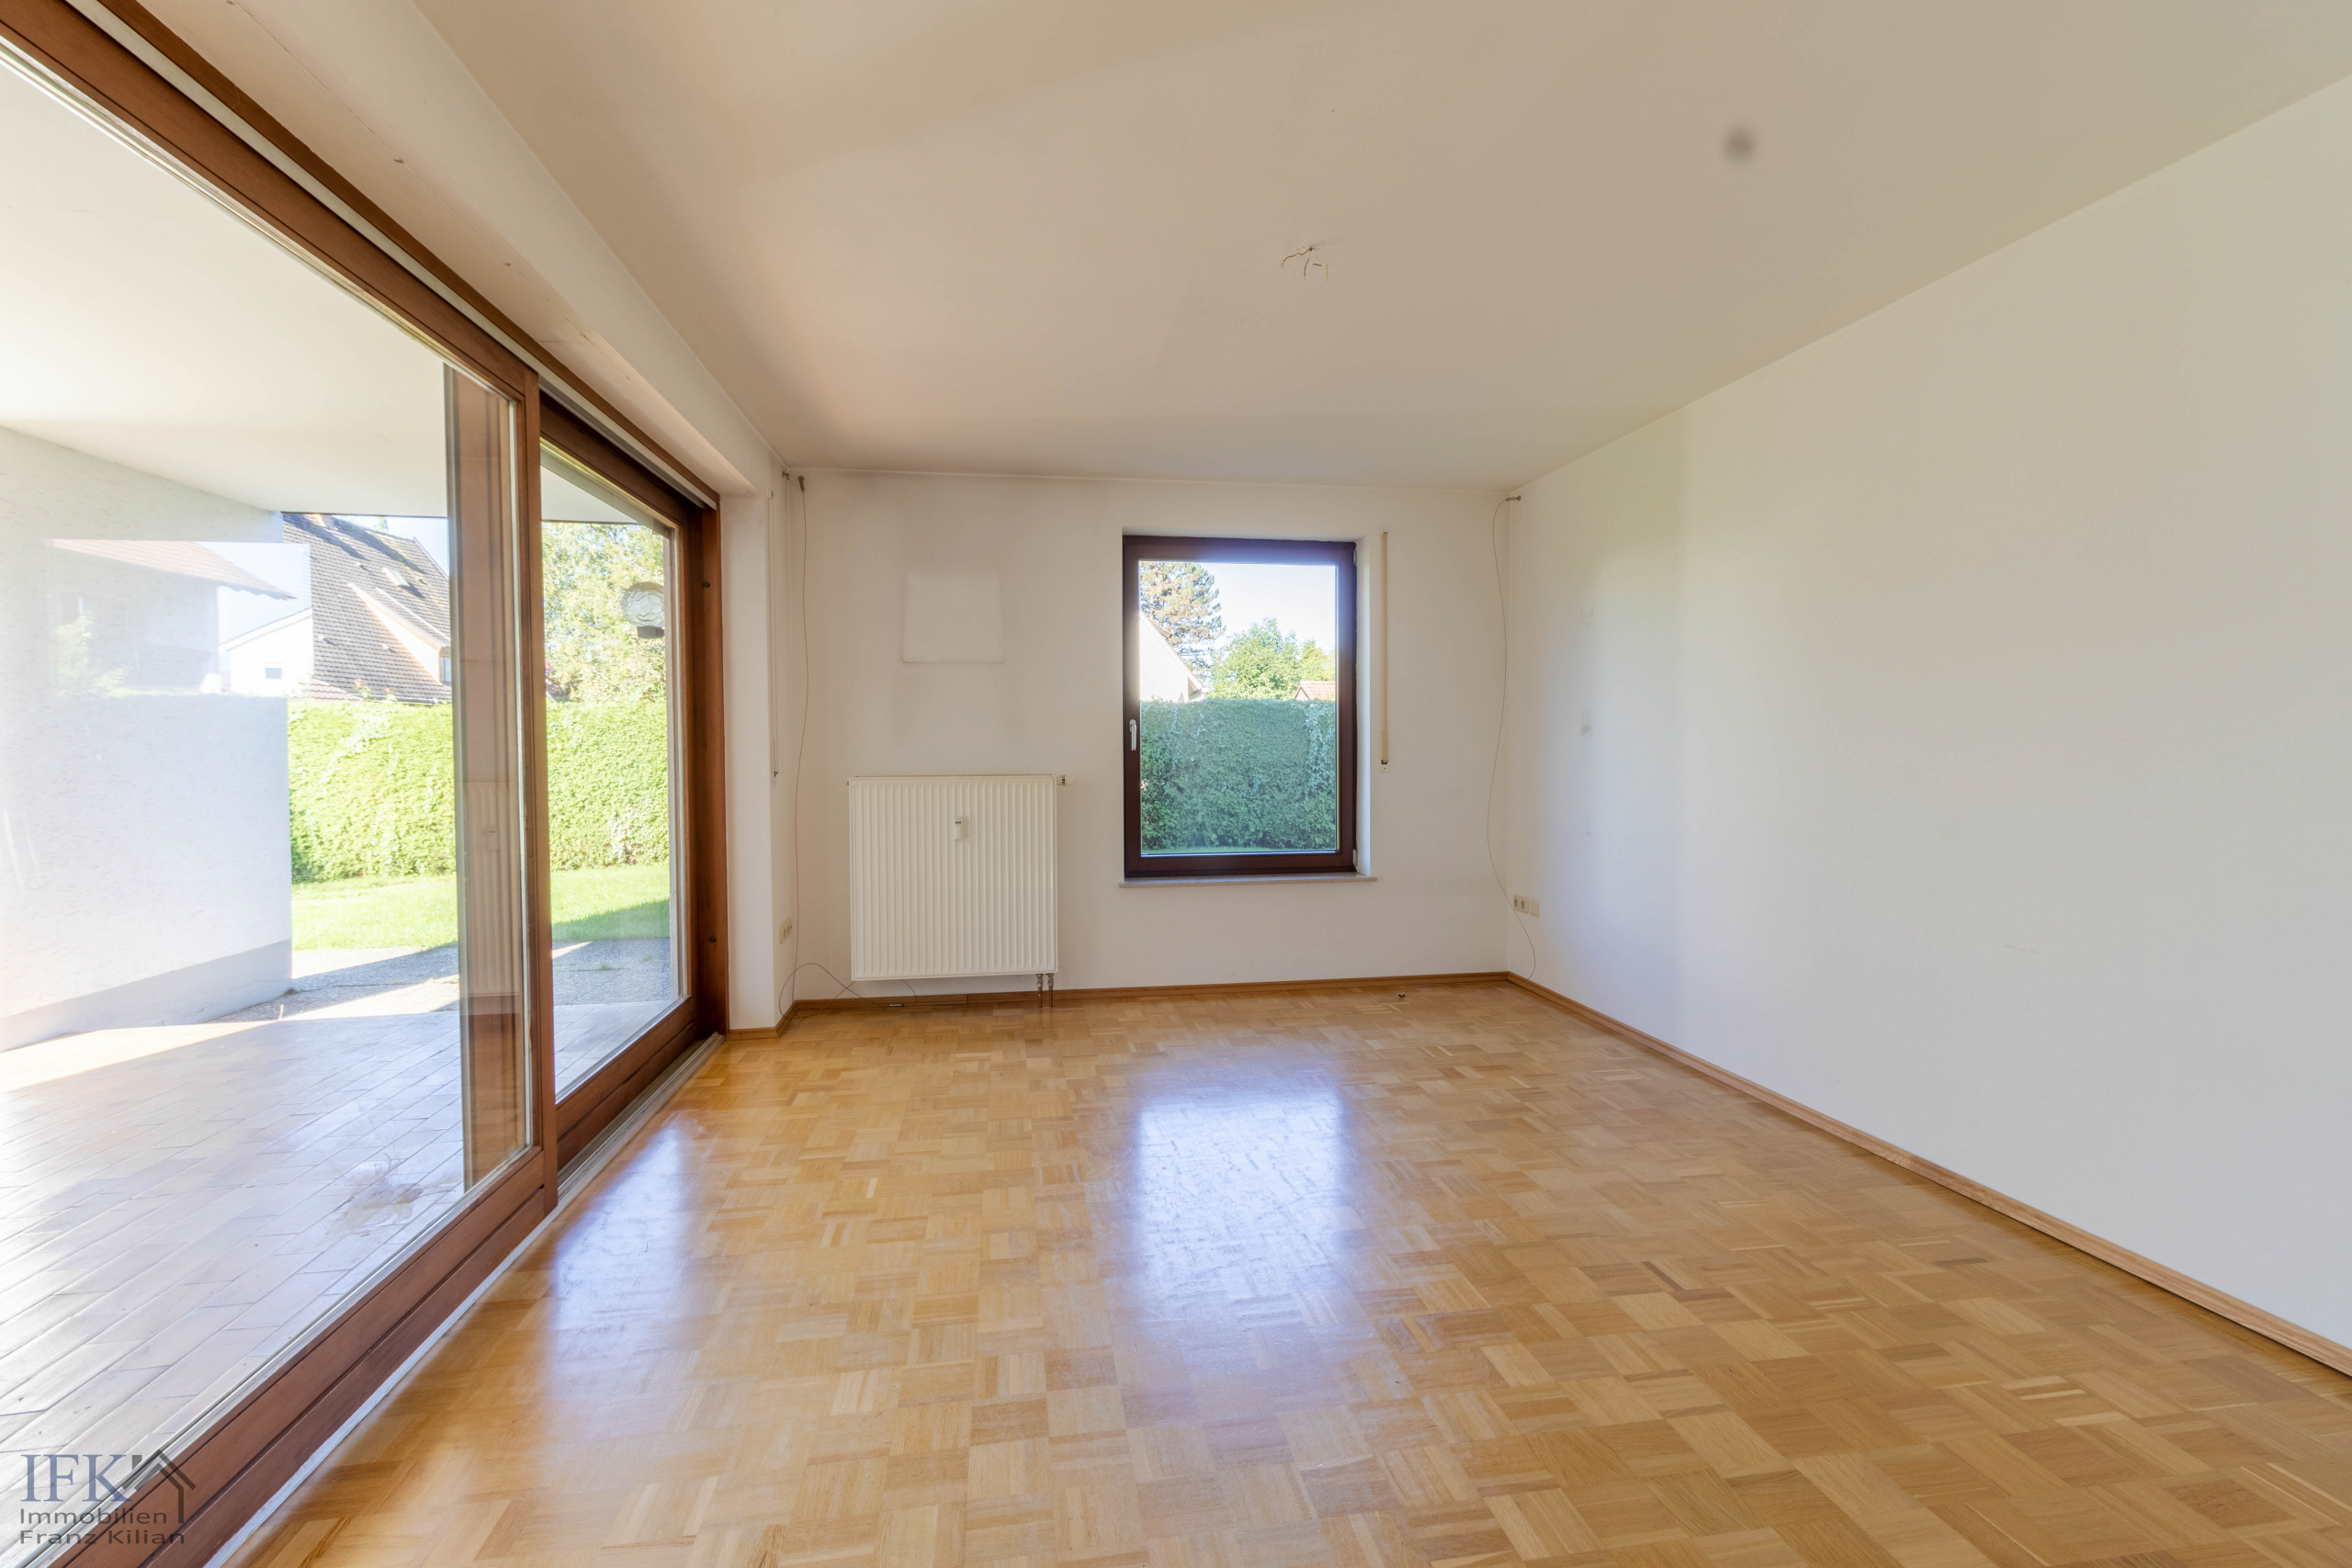 Großes, befristet vermietetes 3-Familienhaus in Bestlage von Weilheim - EG Schlafzimmer